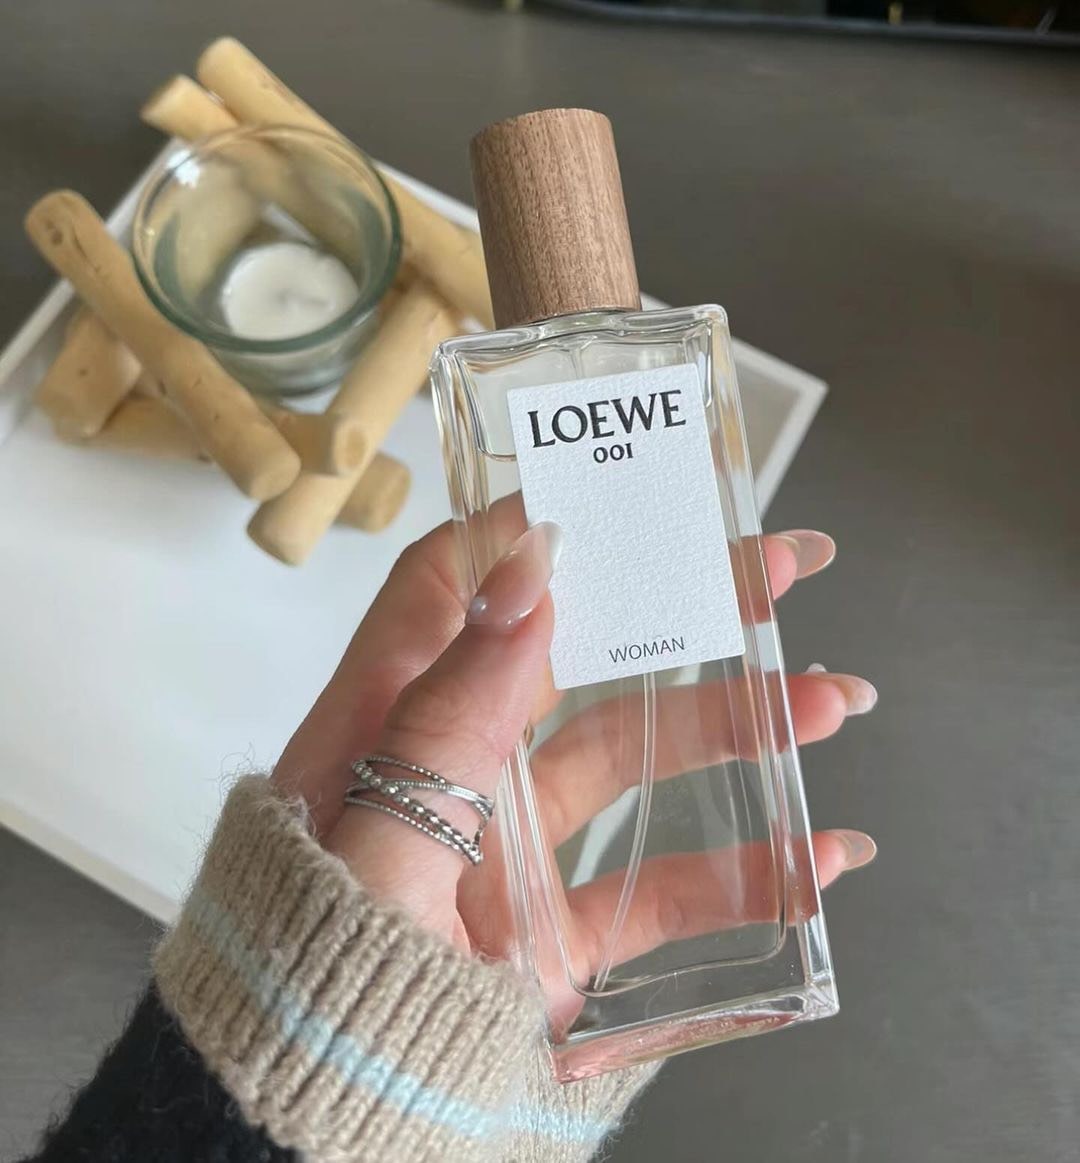 Loewe 001 Woman Eau De Parfum 4 - Nuochoarosa.com - Nước hoa cao cấp, chính hãng giá tốt, mẫu mới